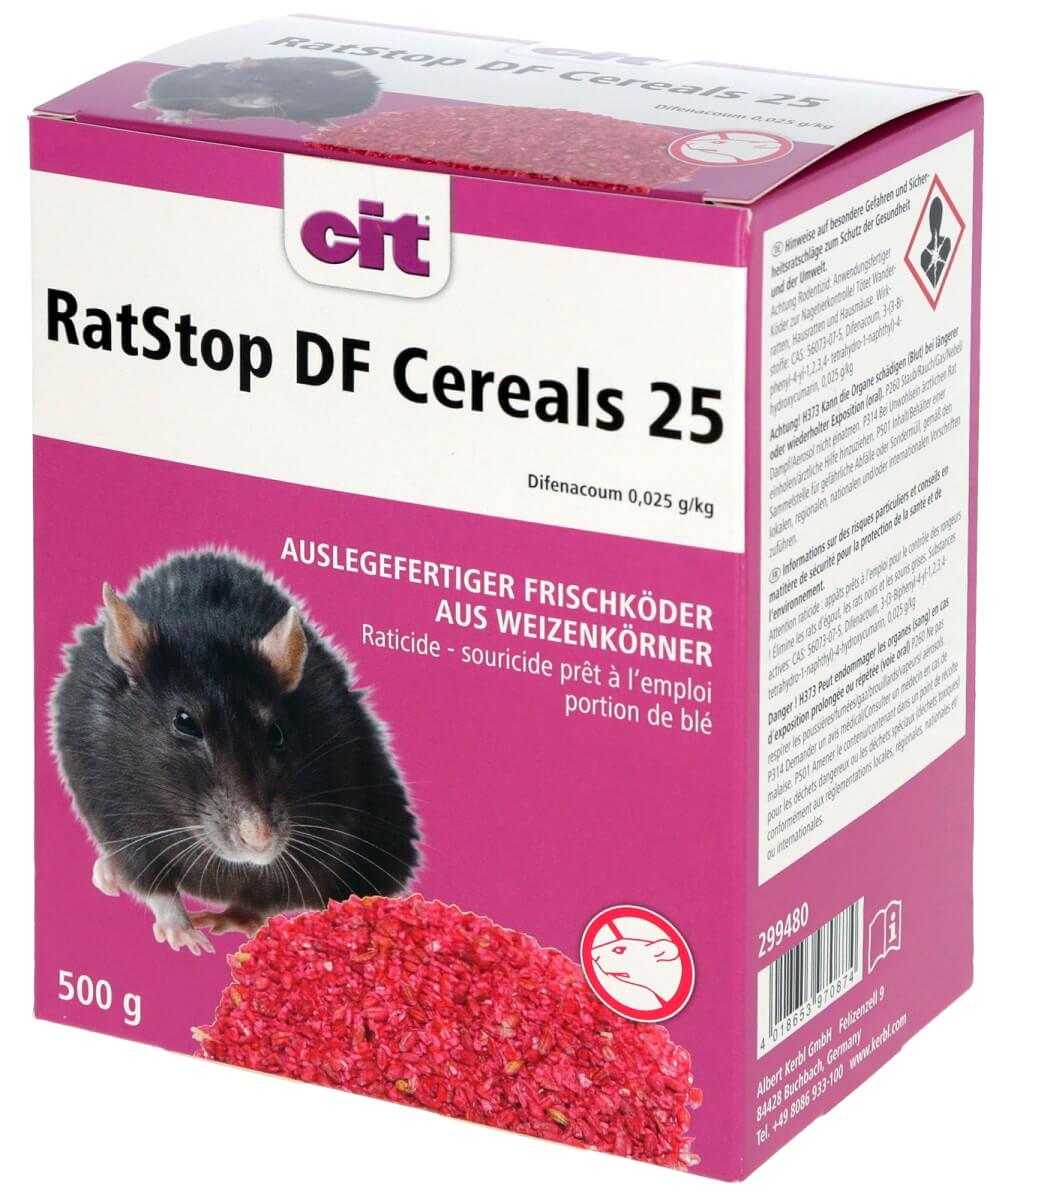 KERBL RatStop Rattengift DF Cereal 25